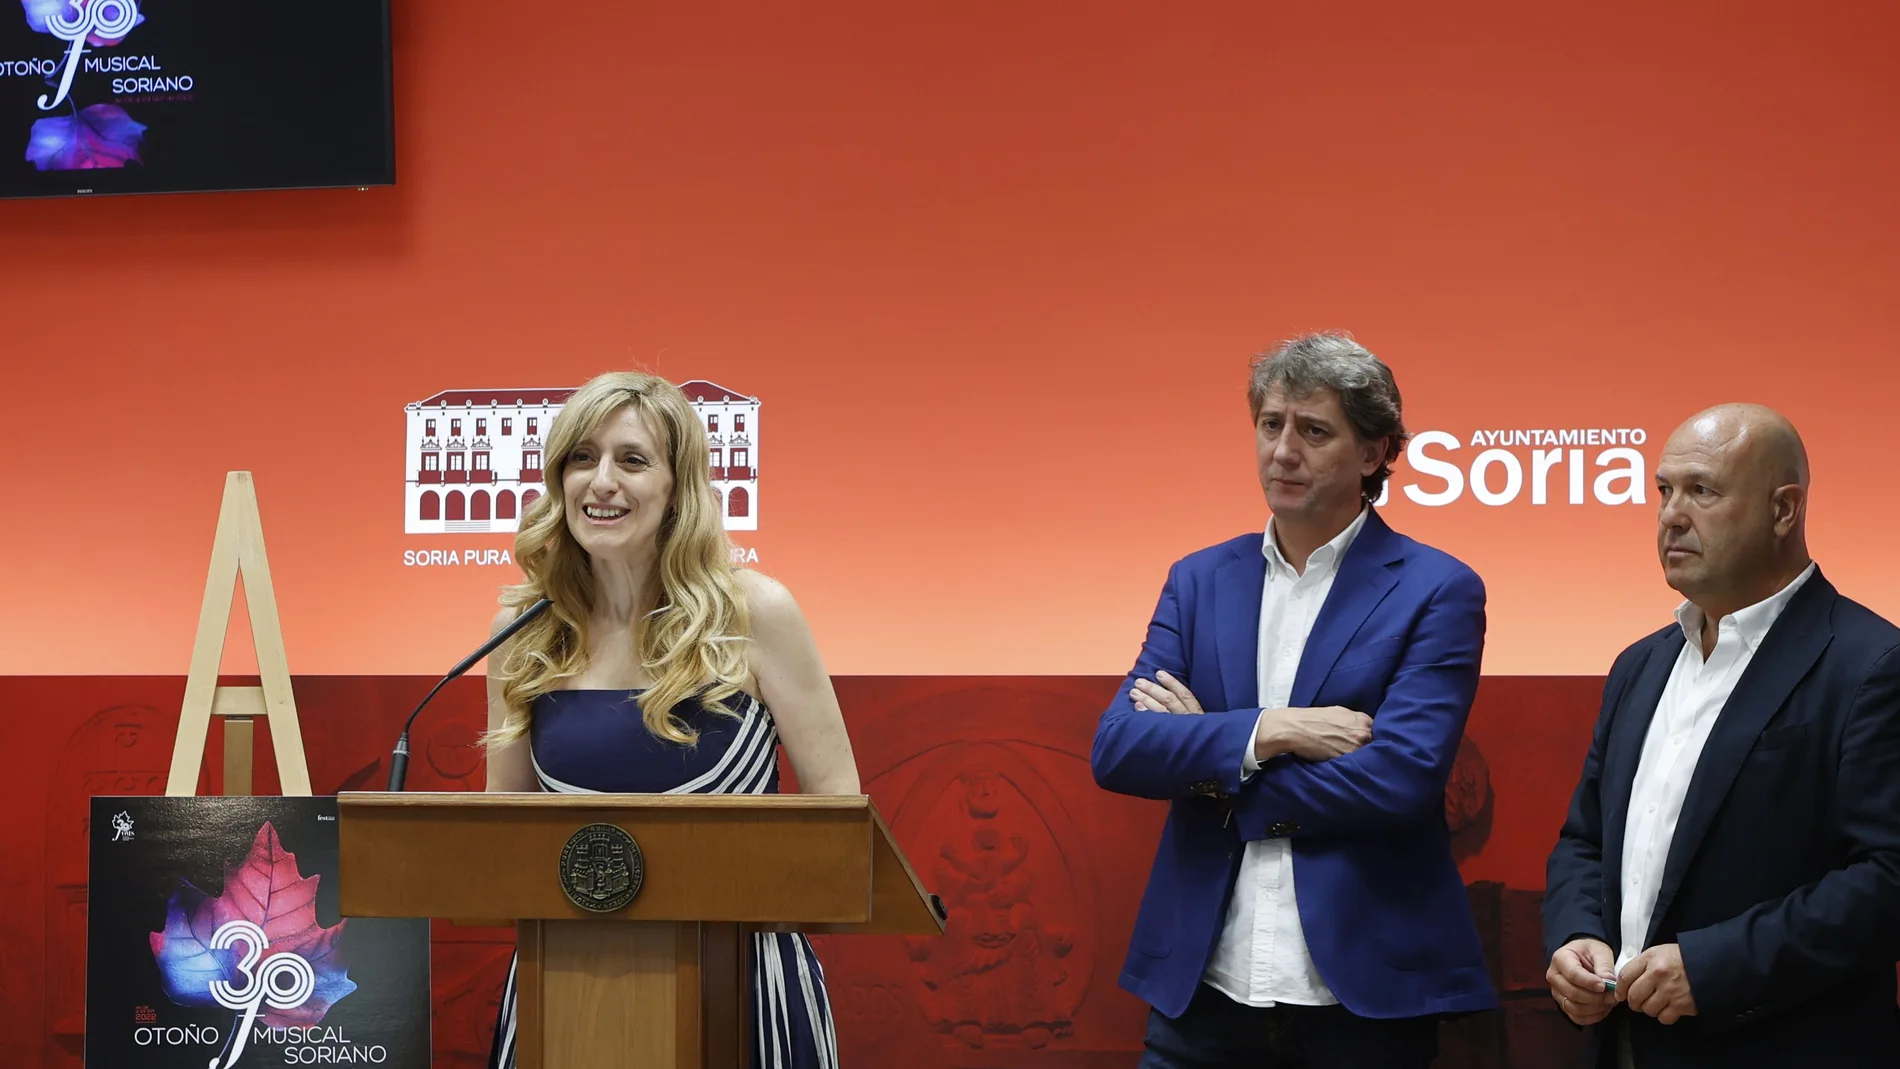 La viceconsejera de Acción Cultural, Mar Sancho, presenta el 30 Otoño Musical Soriano junto al alcalde Carlos Martínez, entre otros